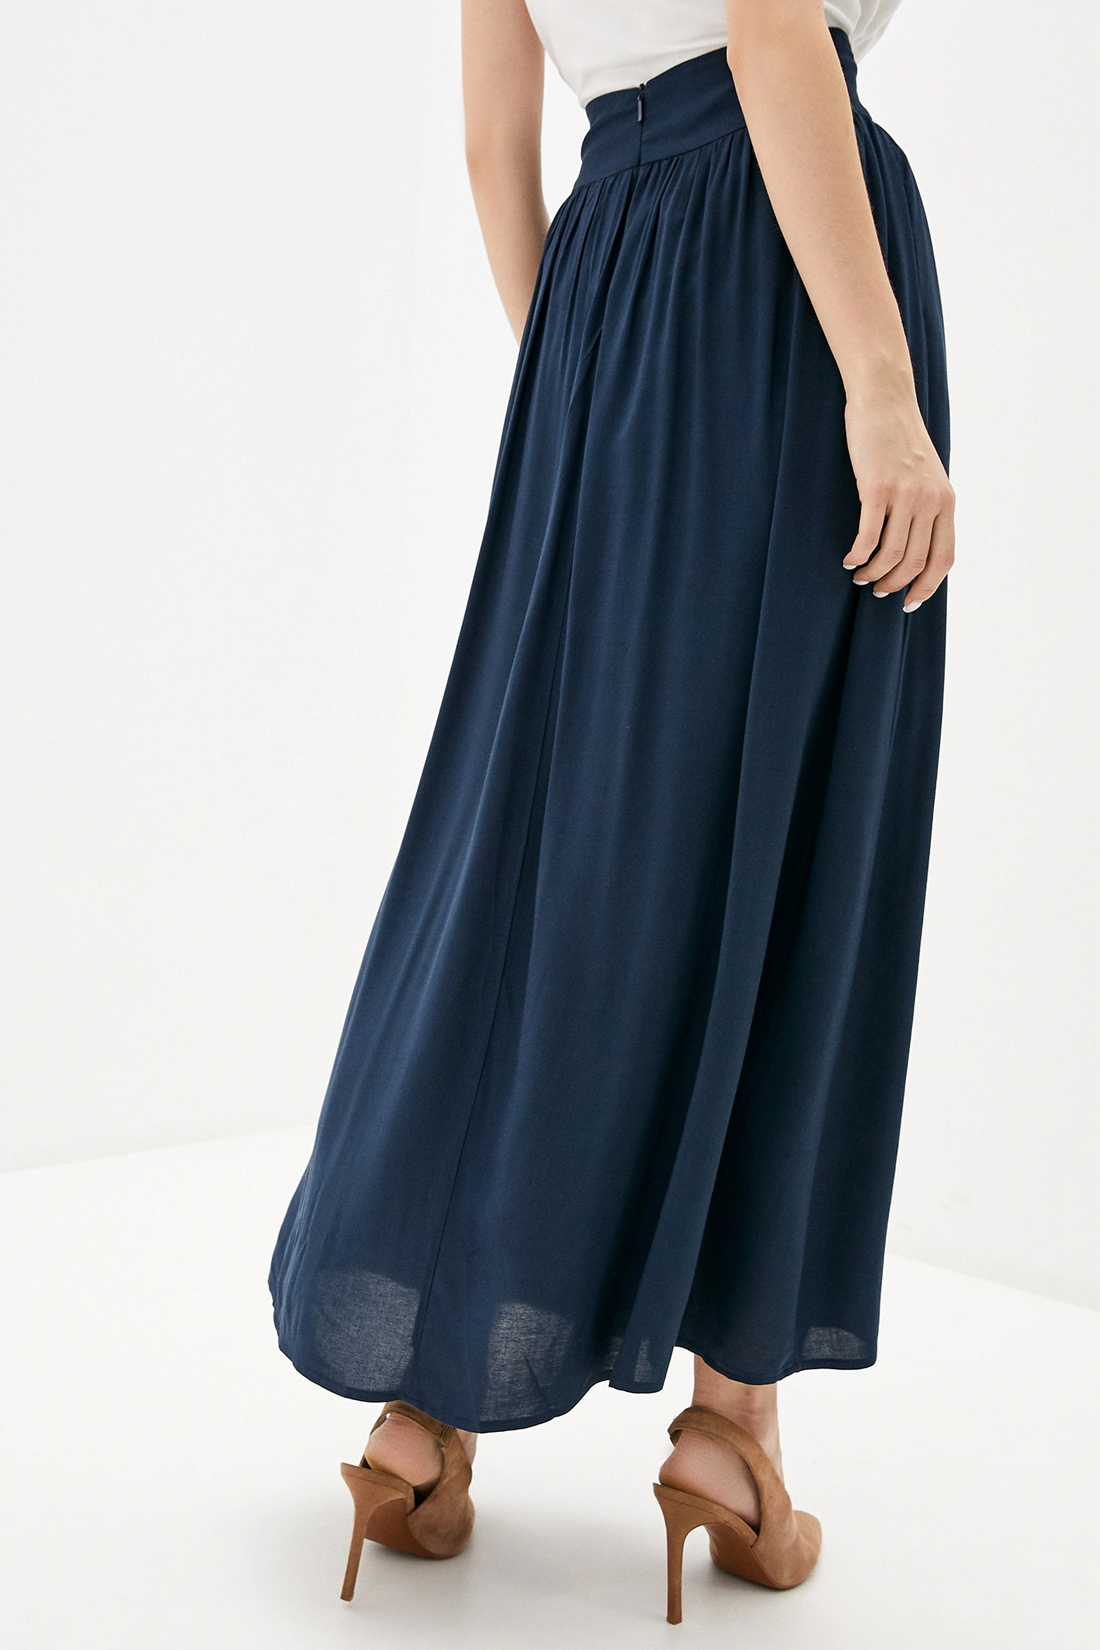 Длинная юбка на кокетке (арт. baon B470027), размер XS, цвет синий Длинная юбка на кокетке (арт. baon B470027) - фото 2